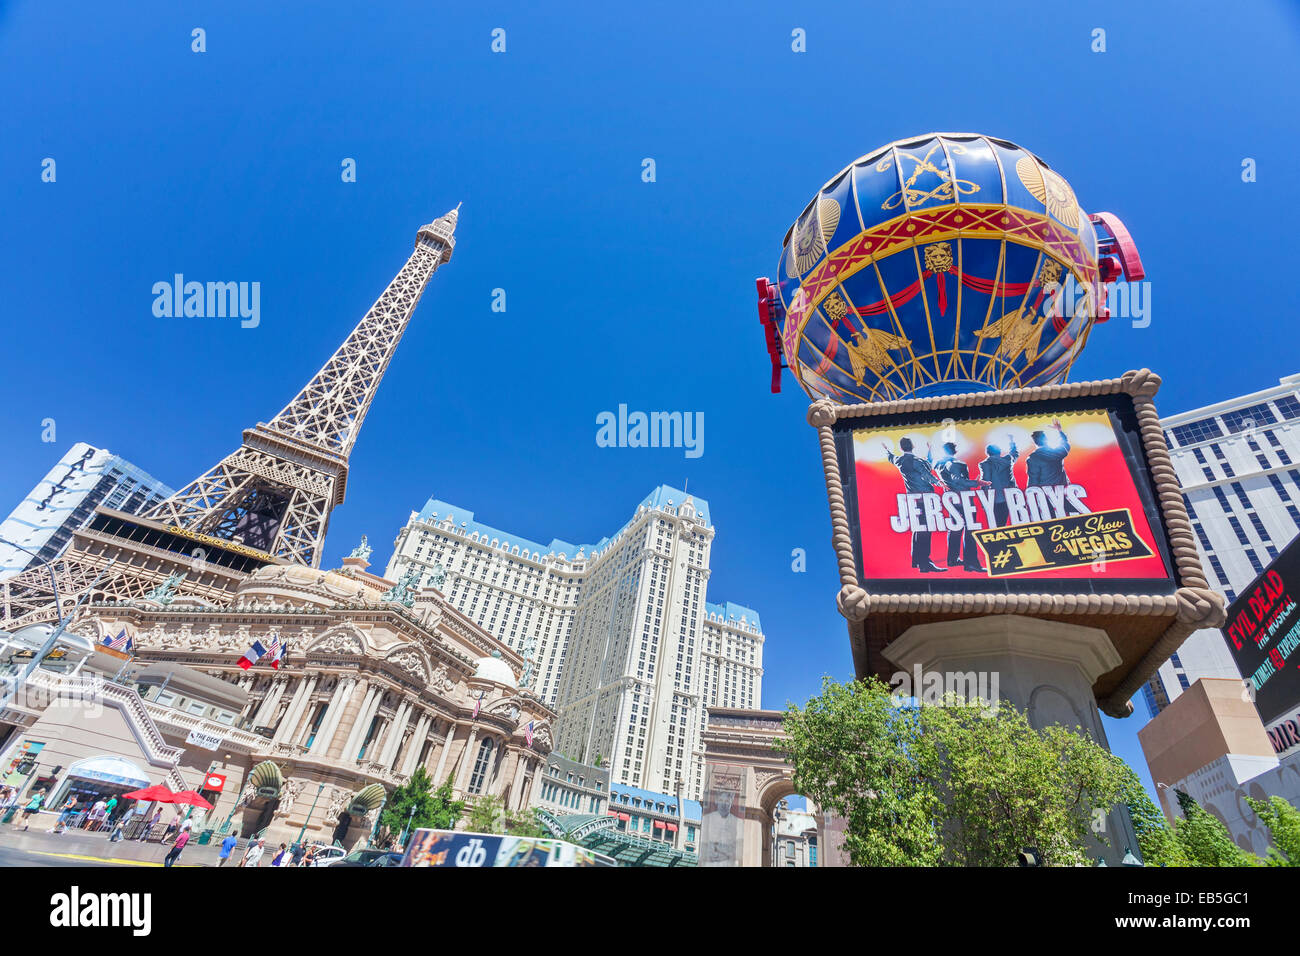 Vista De La Torre Eiffel En Las Vegas Foto editorial - Imagen de juego,  azul: 33316386